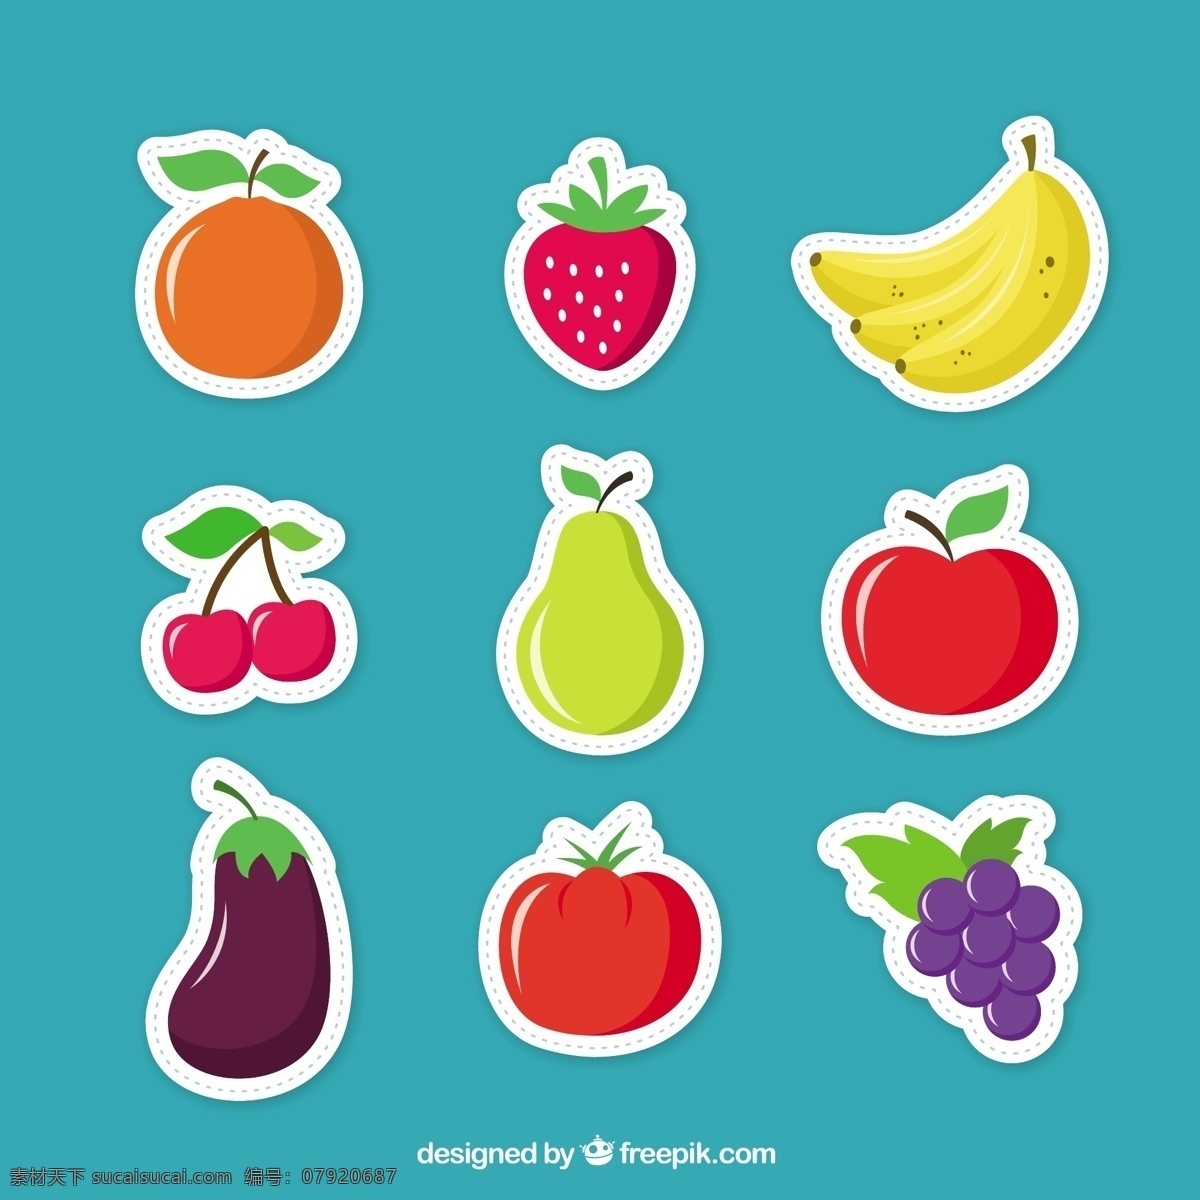 水果贴纸 食品 标签 图标 健康 贴纸 水果 苹果 橙色 彩色 有机 草莓 香蕉 食品图标 葡萄 番茄 青色 天蓝色